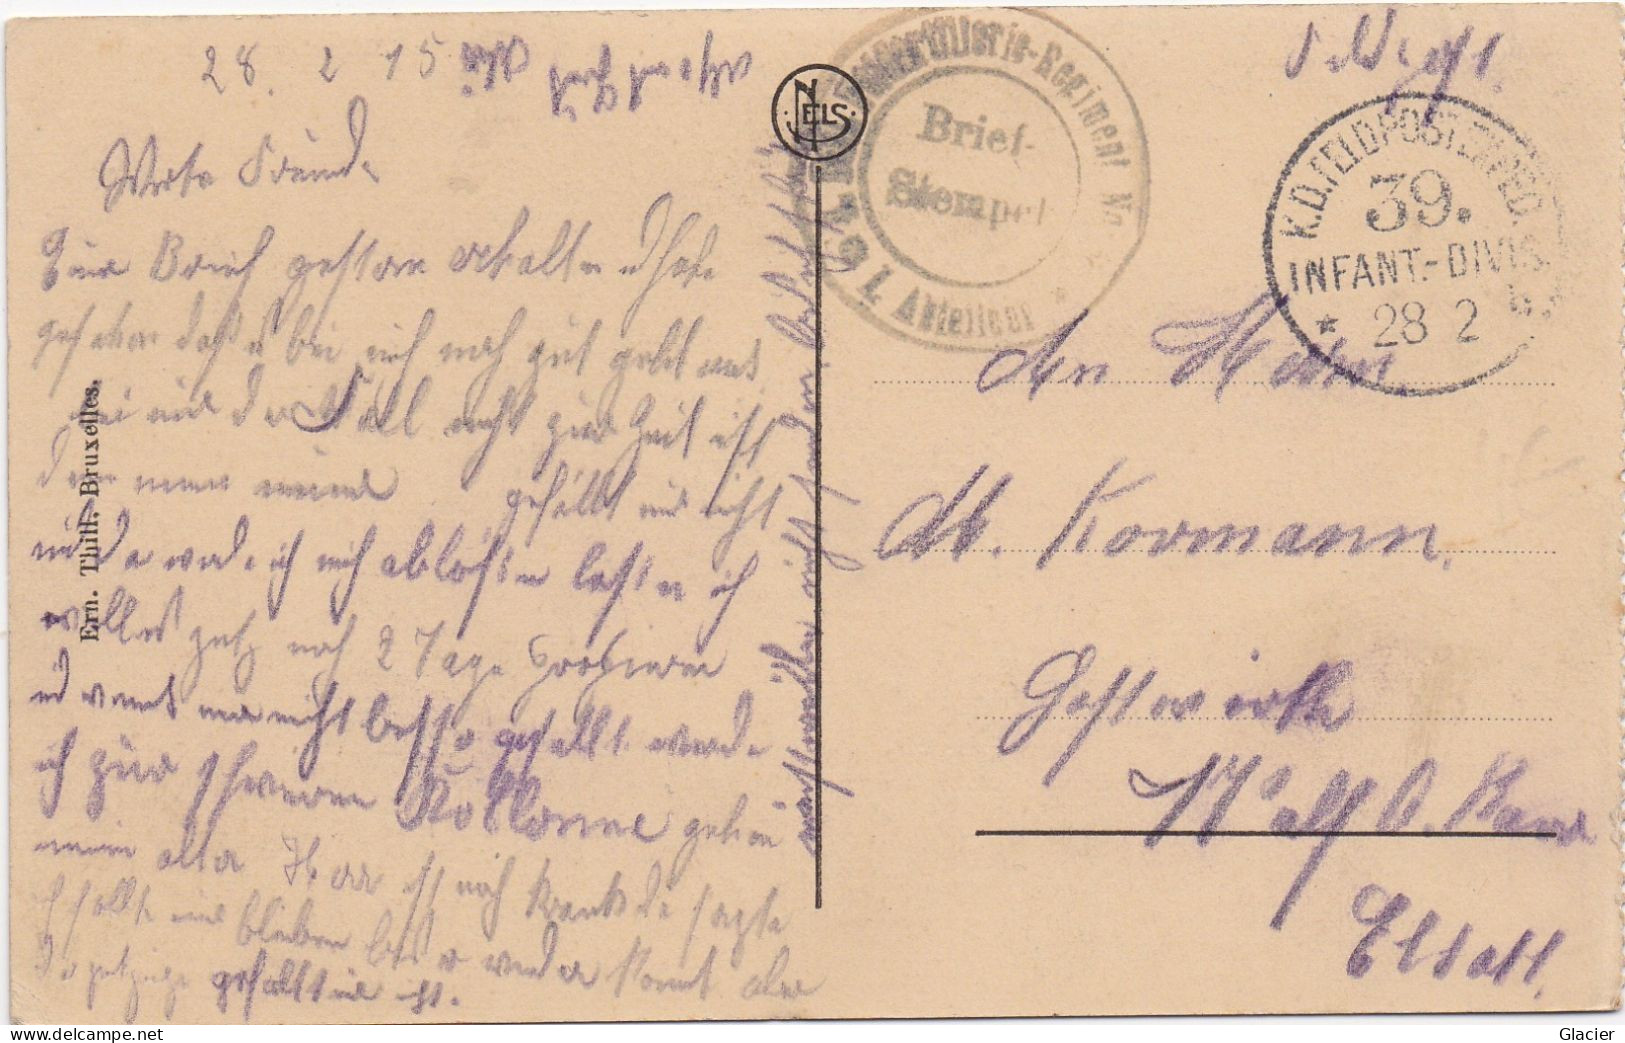 Deutsche Feldpost 1 Weltkrieg - 39 Inf. Div. 28-2-1915 - Karte Ostende - Feldpost (Portofreiheit)